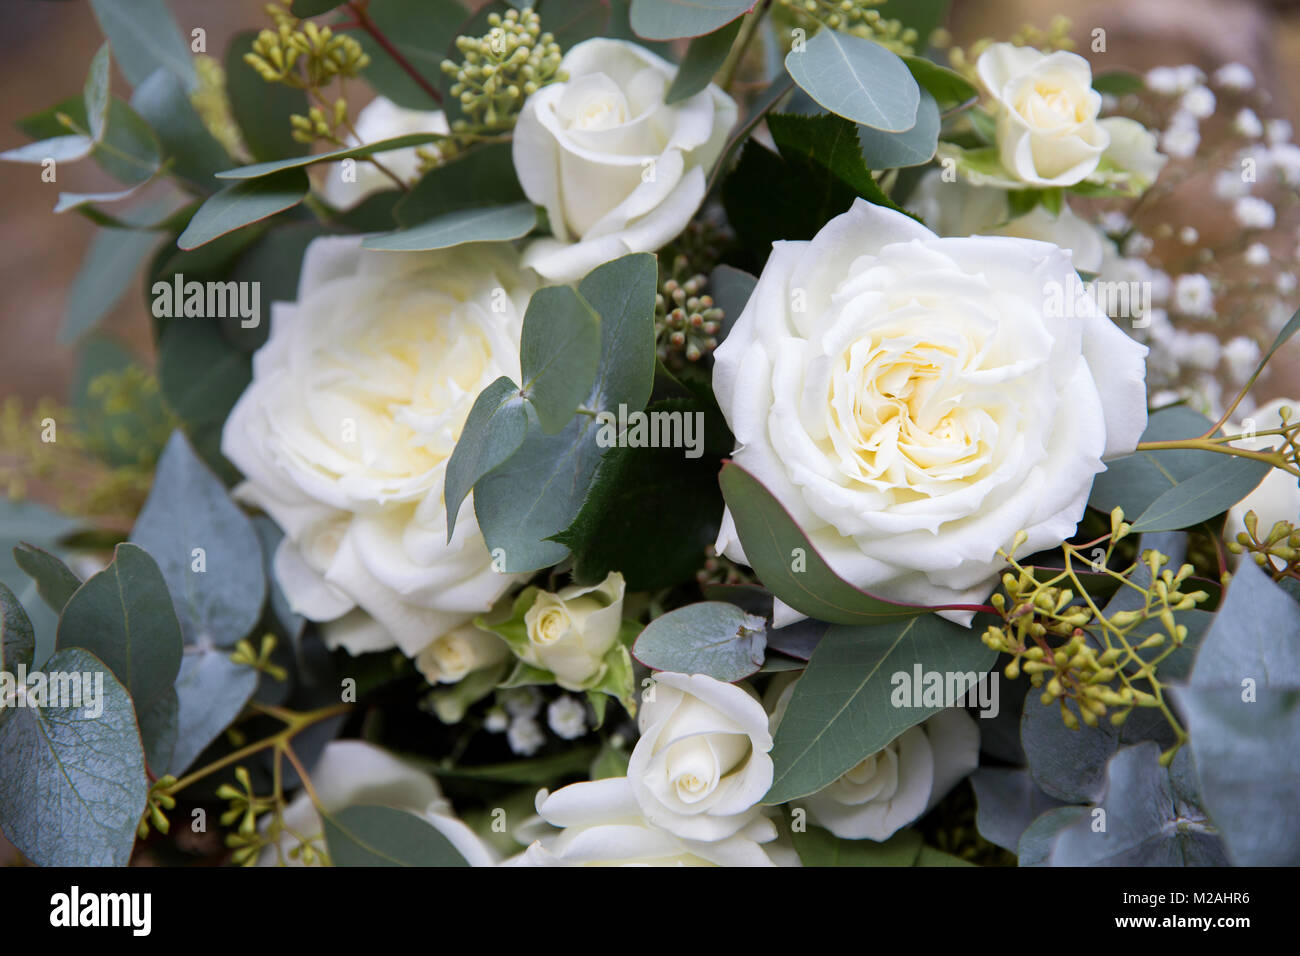 Composizione floreale con rose bianche, close-up Foto Stock